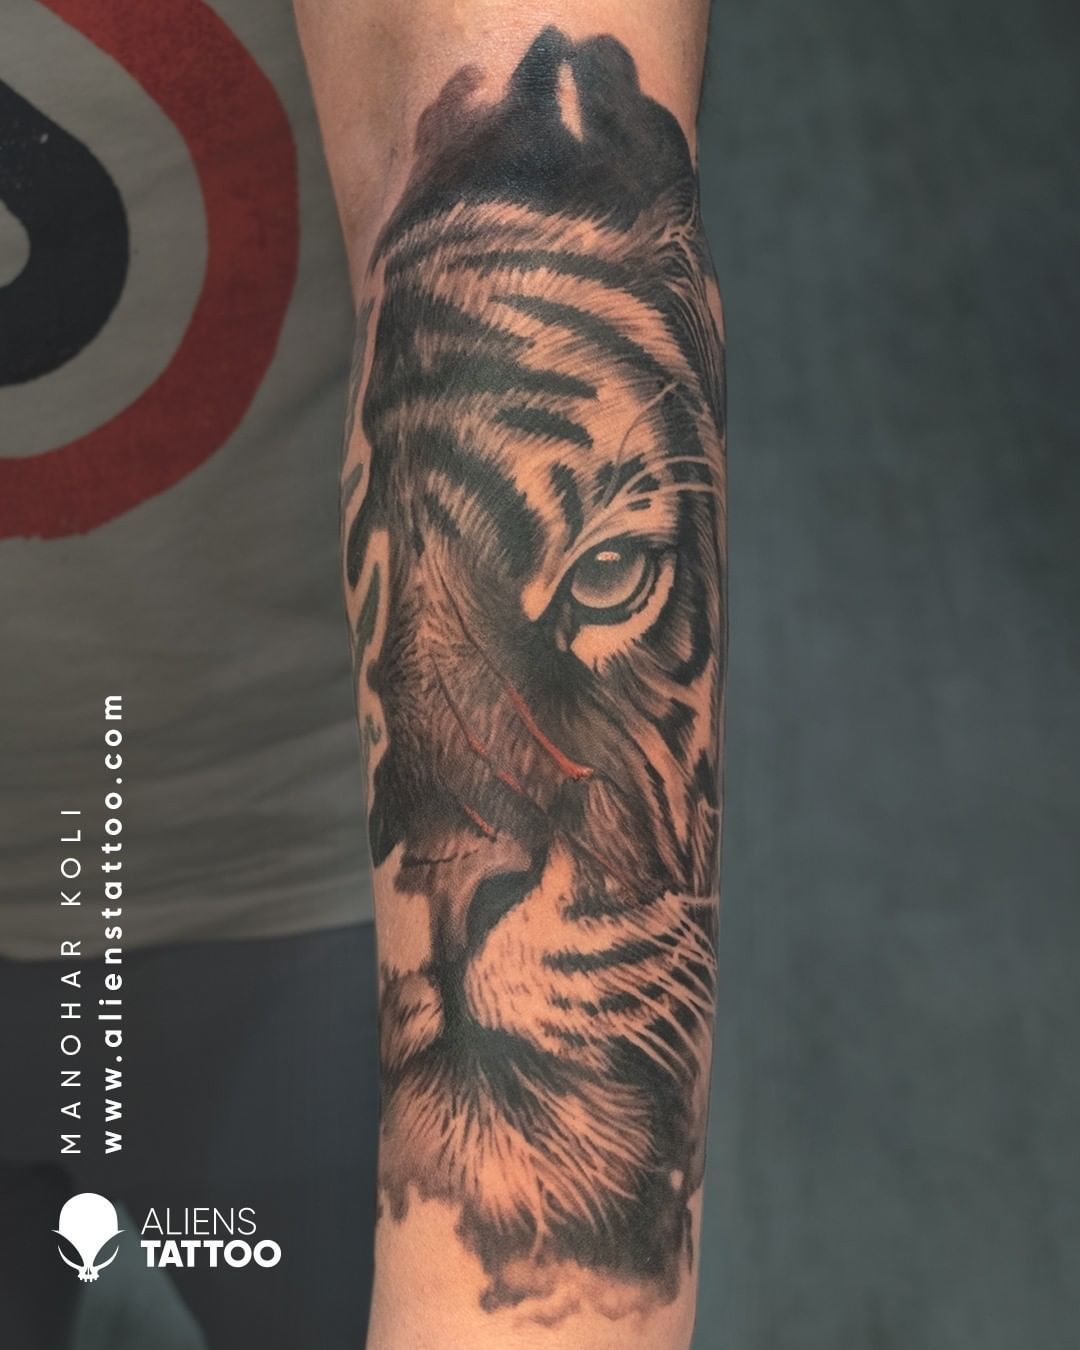 Aliens Tattoo • Tattoo Studio | Book Now • Tattoodo